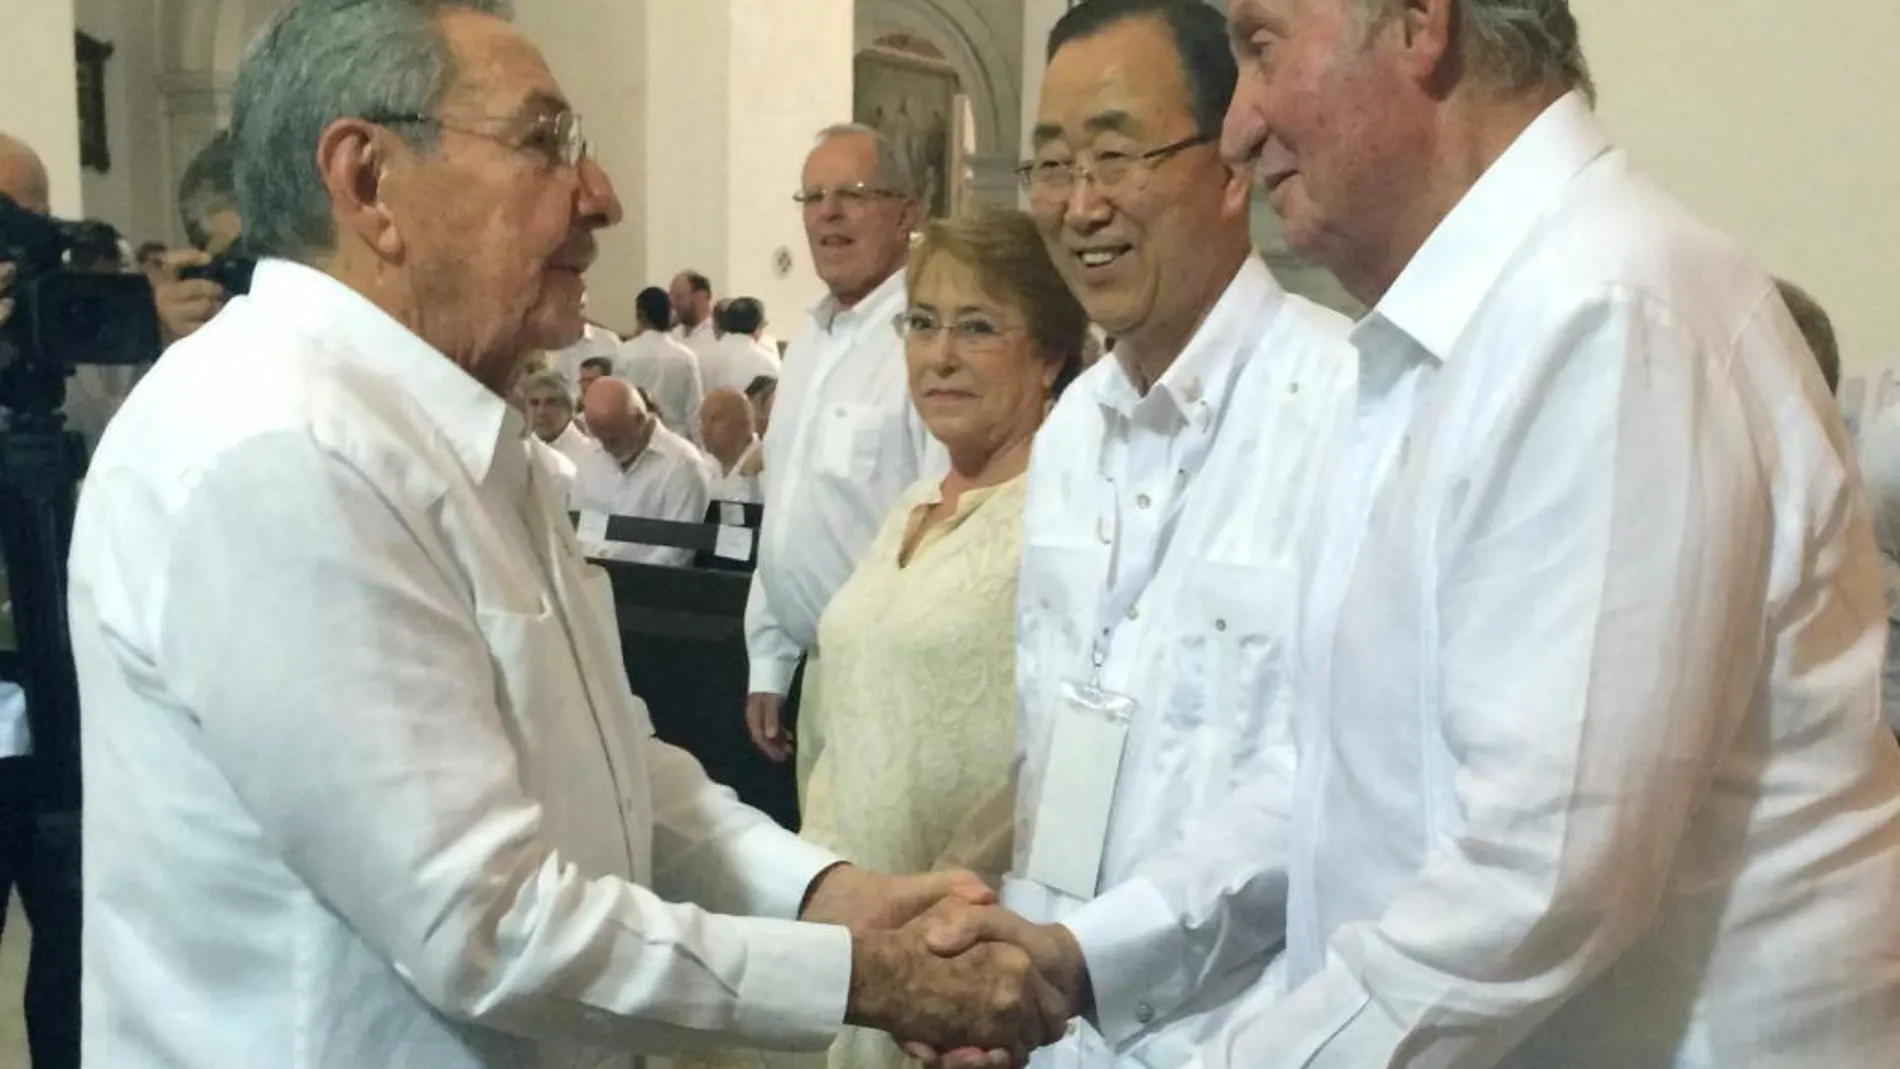 El Rey Juan Carlos de España junto a el secretario general de las Naciones Unidas, Ban Ki-moon, la presidenta de Chile, Michelle Bachelet y el presidente de Cuba, Raúl Castro en Cartagena